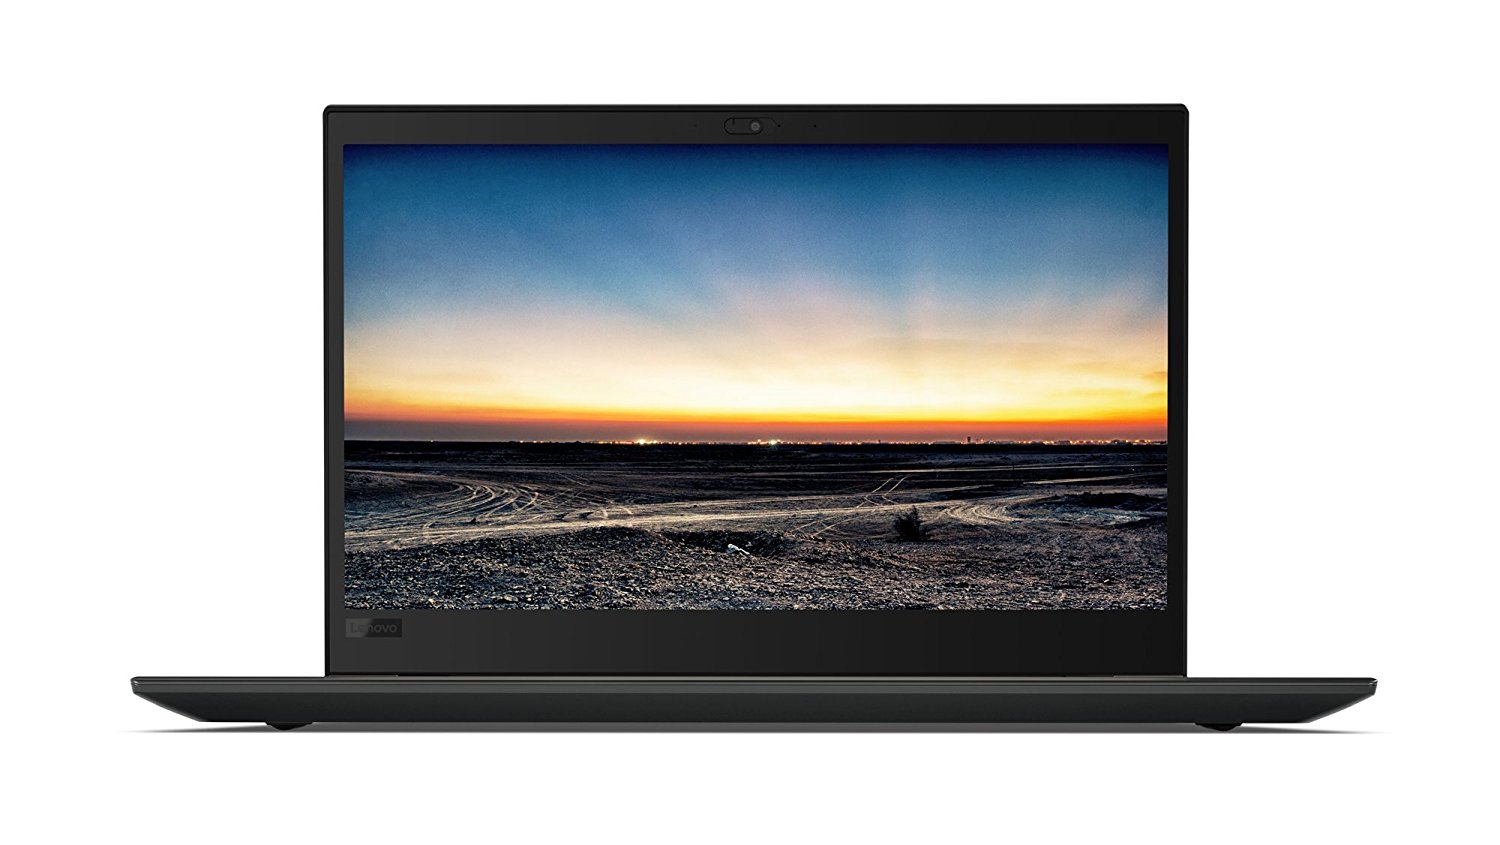 Notebook Lenovo ThinkPad T580 15.6 Full HD Intel Core i7-8550U RAM 8GB SSD 256GB Windows 10 Pro Negru